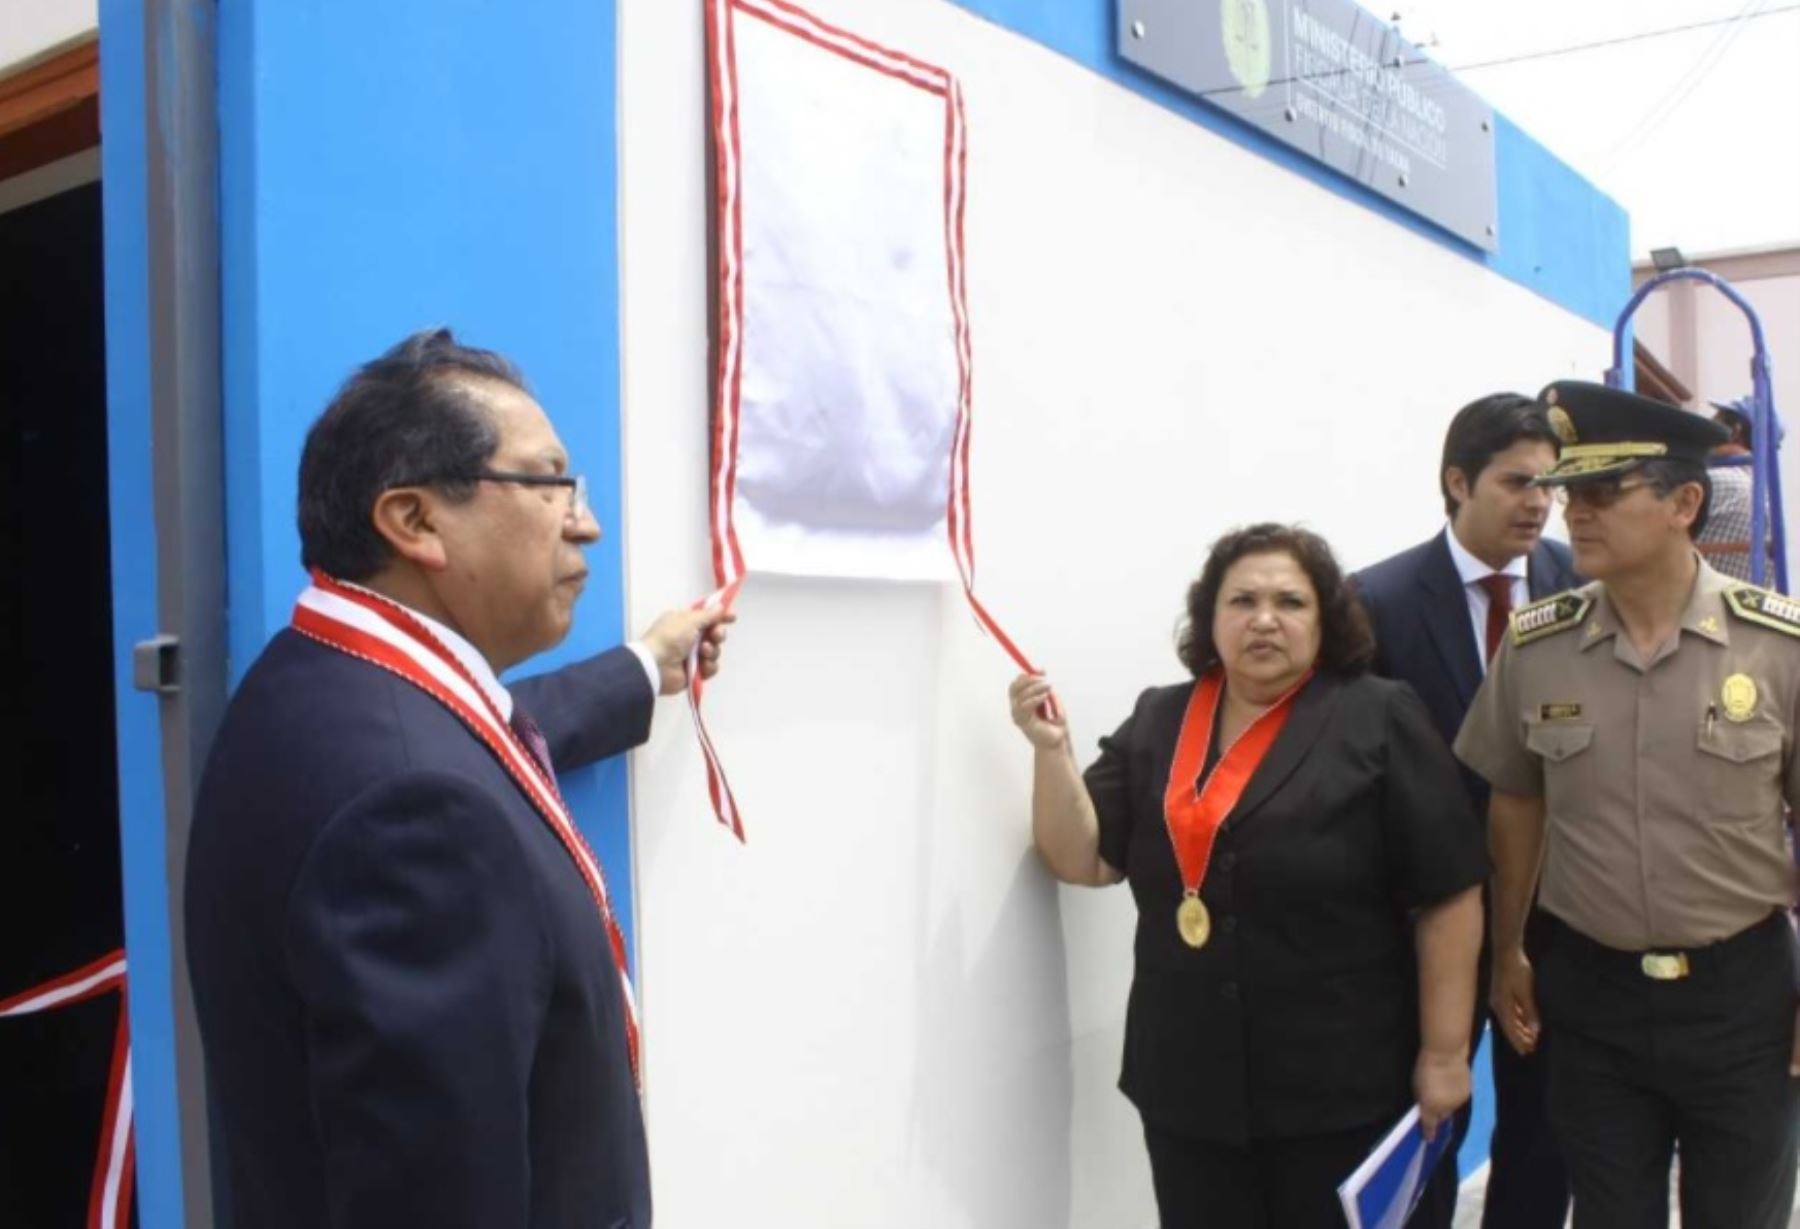 El Fiscal de la Nación, Pablo Sánchez Velarde, encabezó la ceremonia de inauguración de la segunda cámara Gesell en la ciudad de Tacna, que permitirá brindar una atención más oportuna a las víctimas de violencia sexual y familiar en esa zona del país.